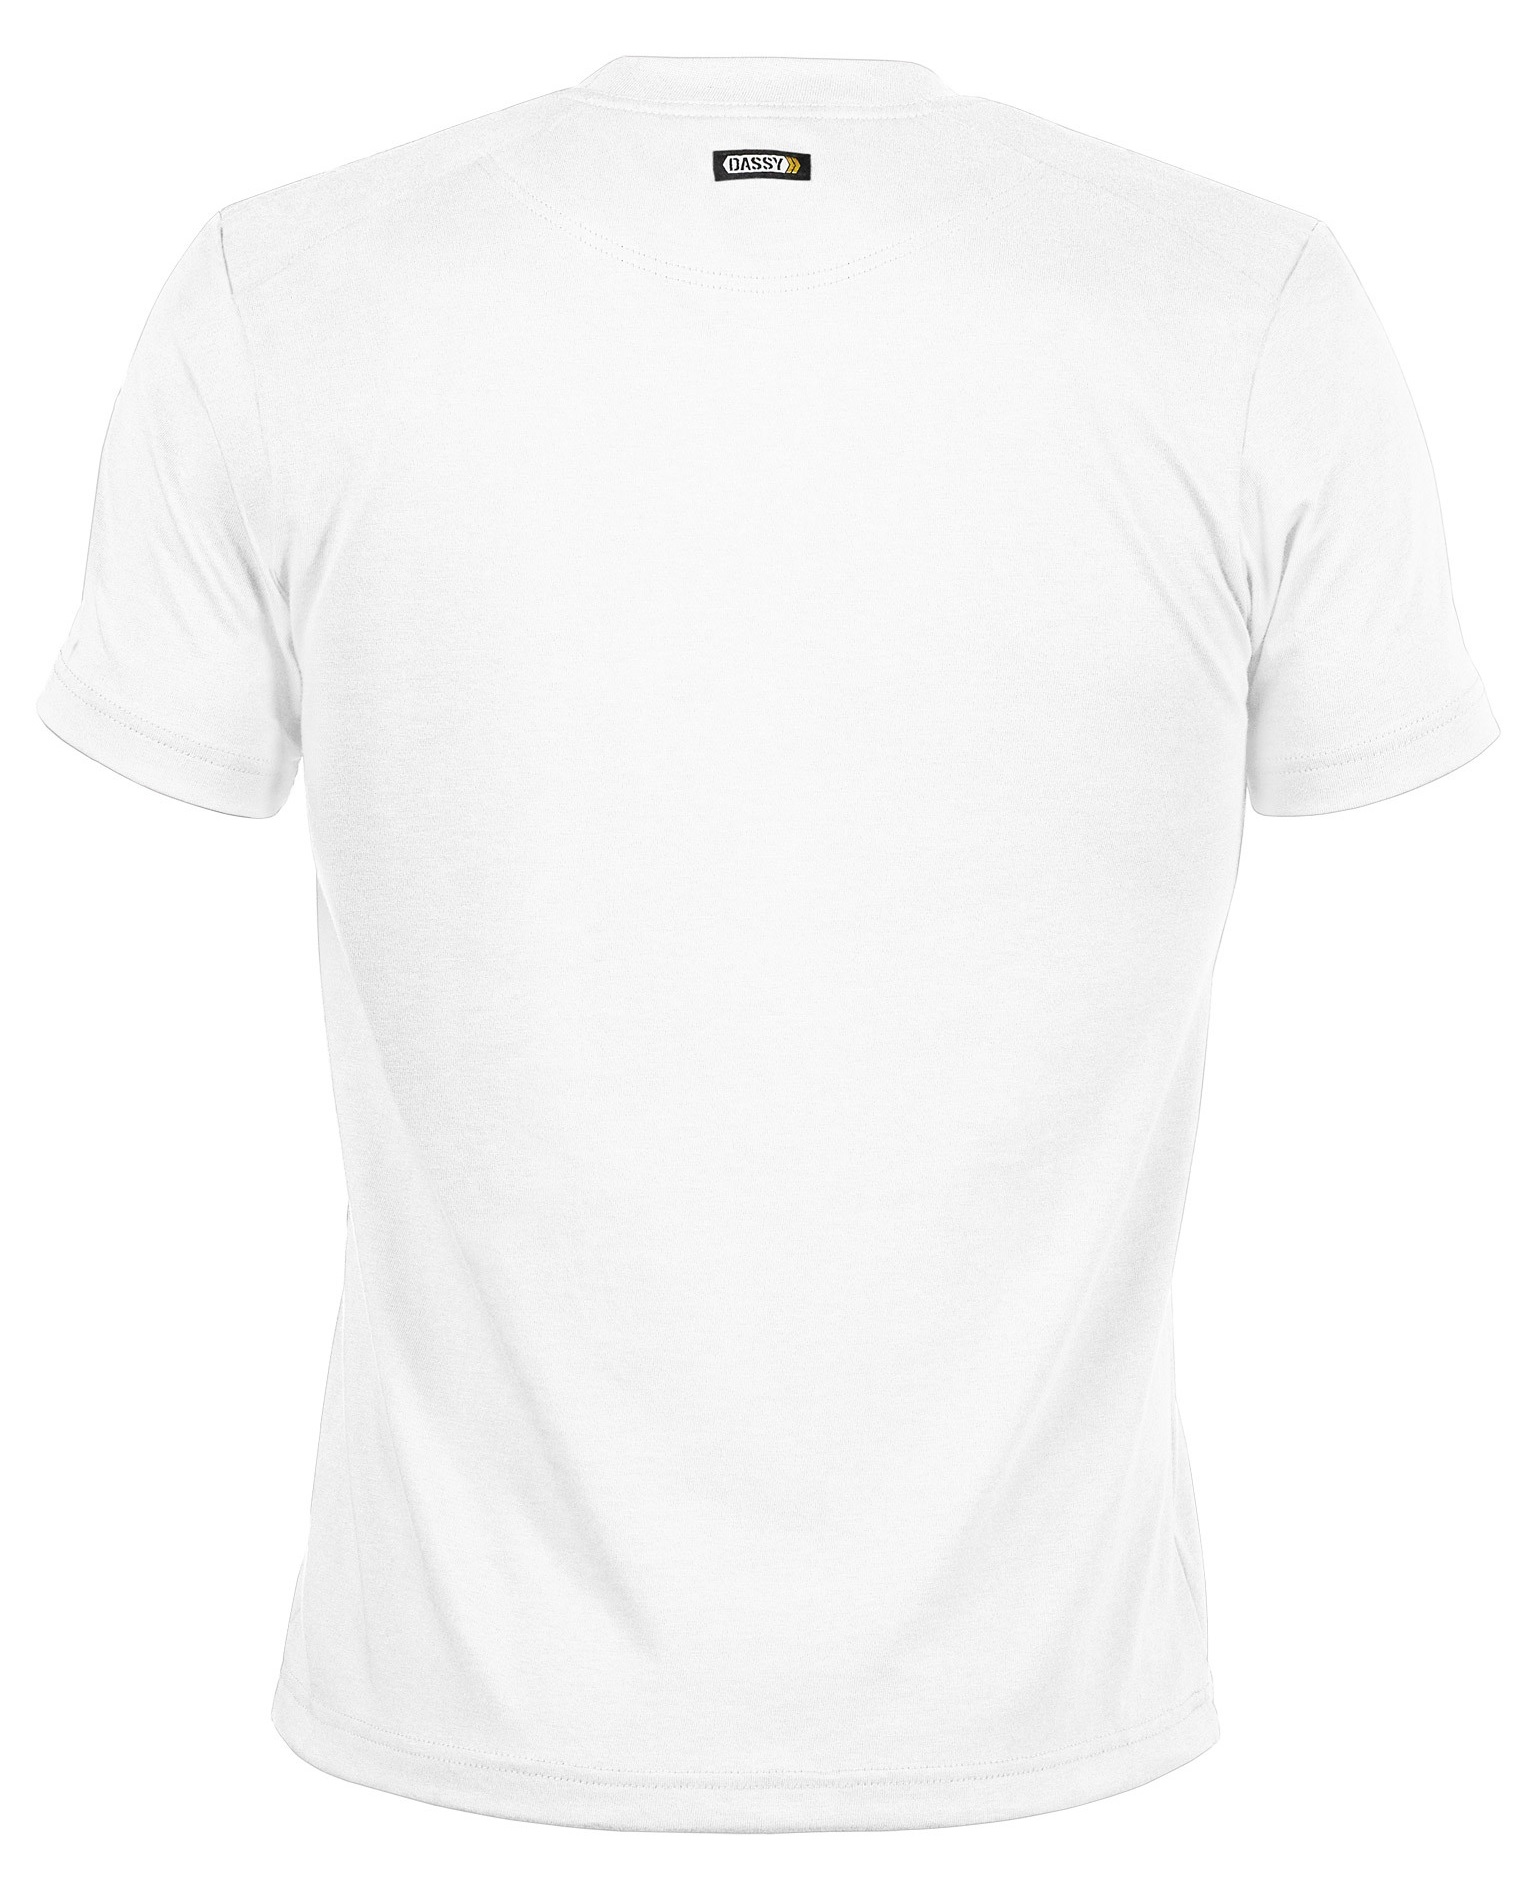 DASSY Victor T-Shirt für häufige Industriereinigungen